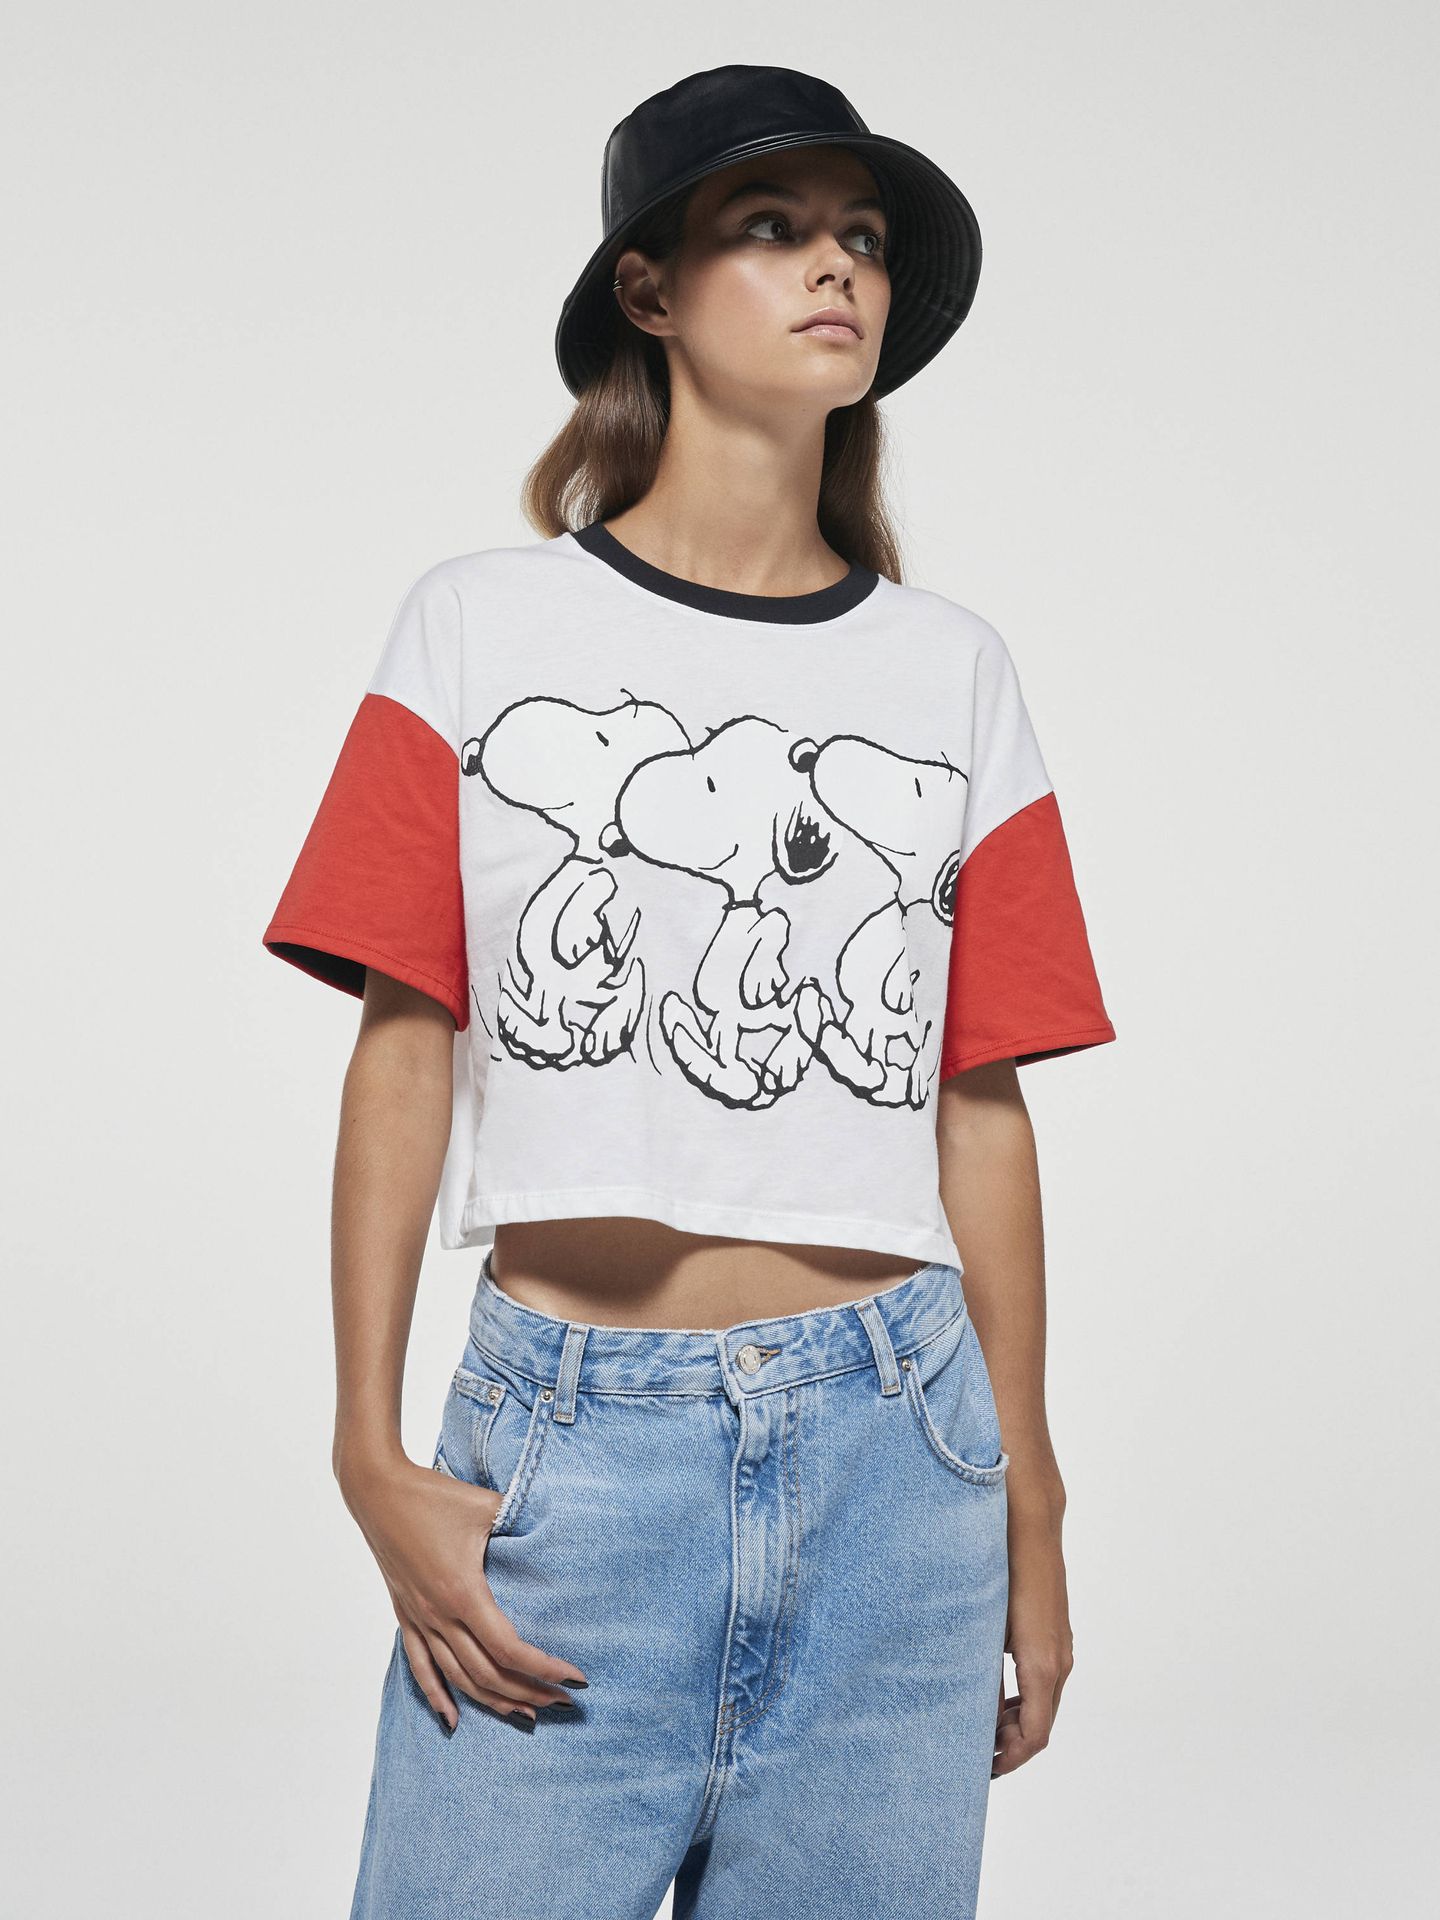 Una de las prendas de la colección de Snoopy x Bershka. (Cortesía)